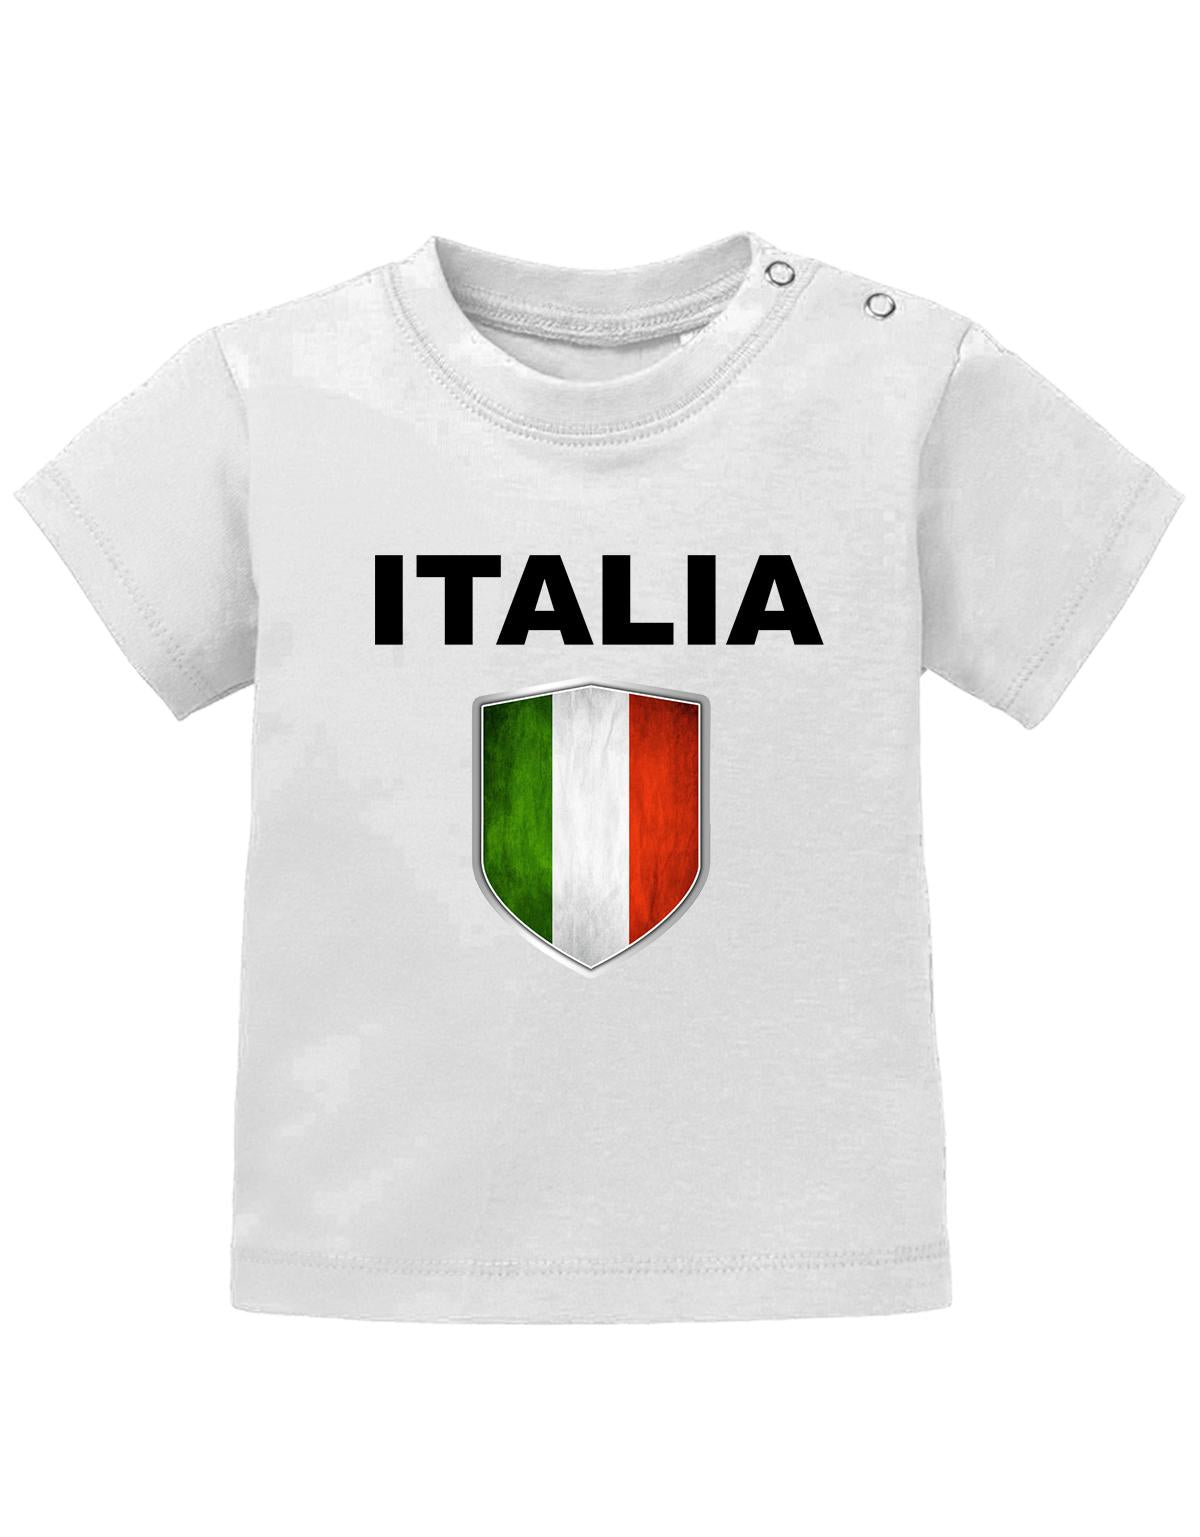 Italien T Shirt für Junge und Mädchen. Italienisches Wappen mit Italia als Schriftzug.